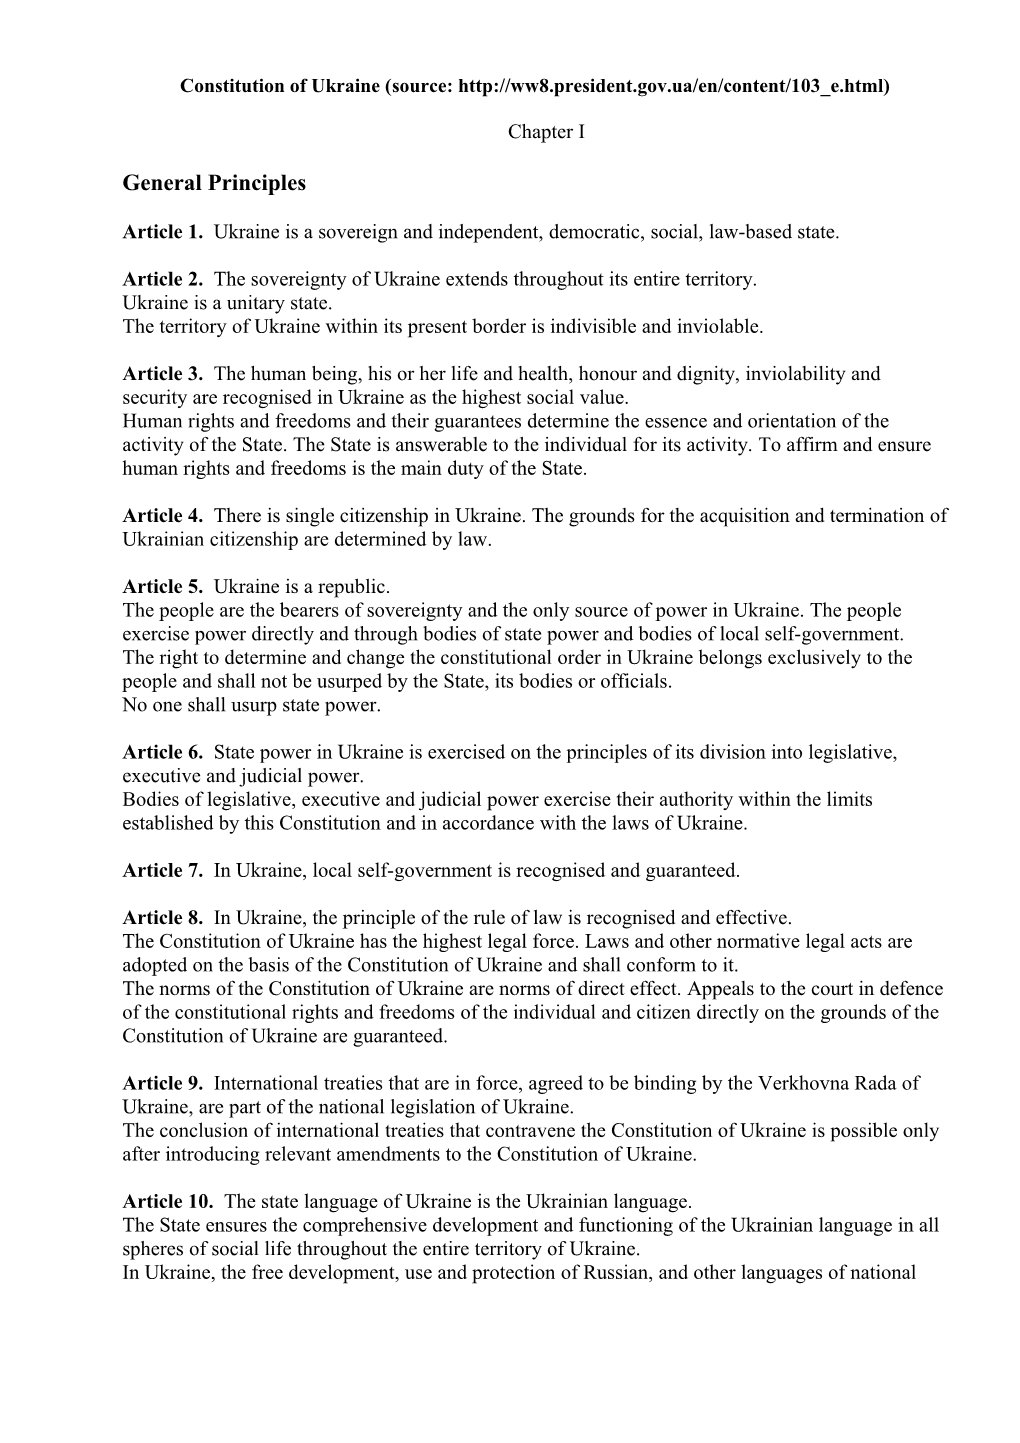 Constitution of Ukraine (Source